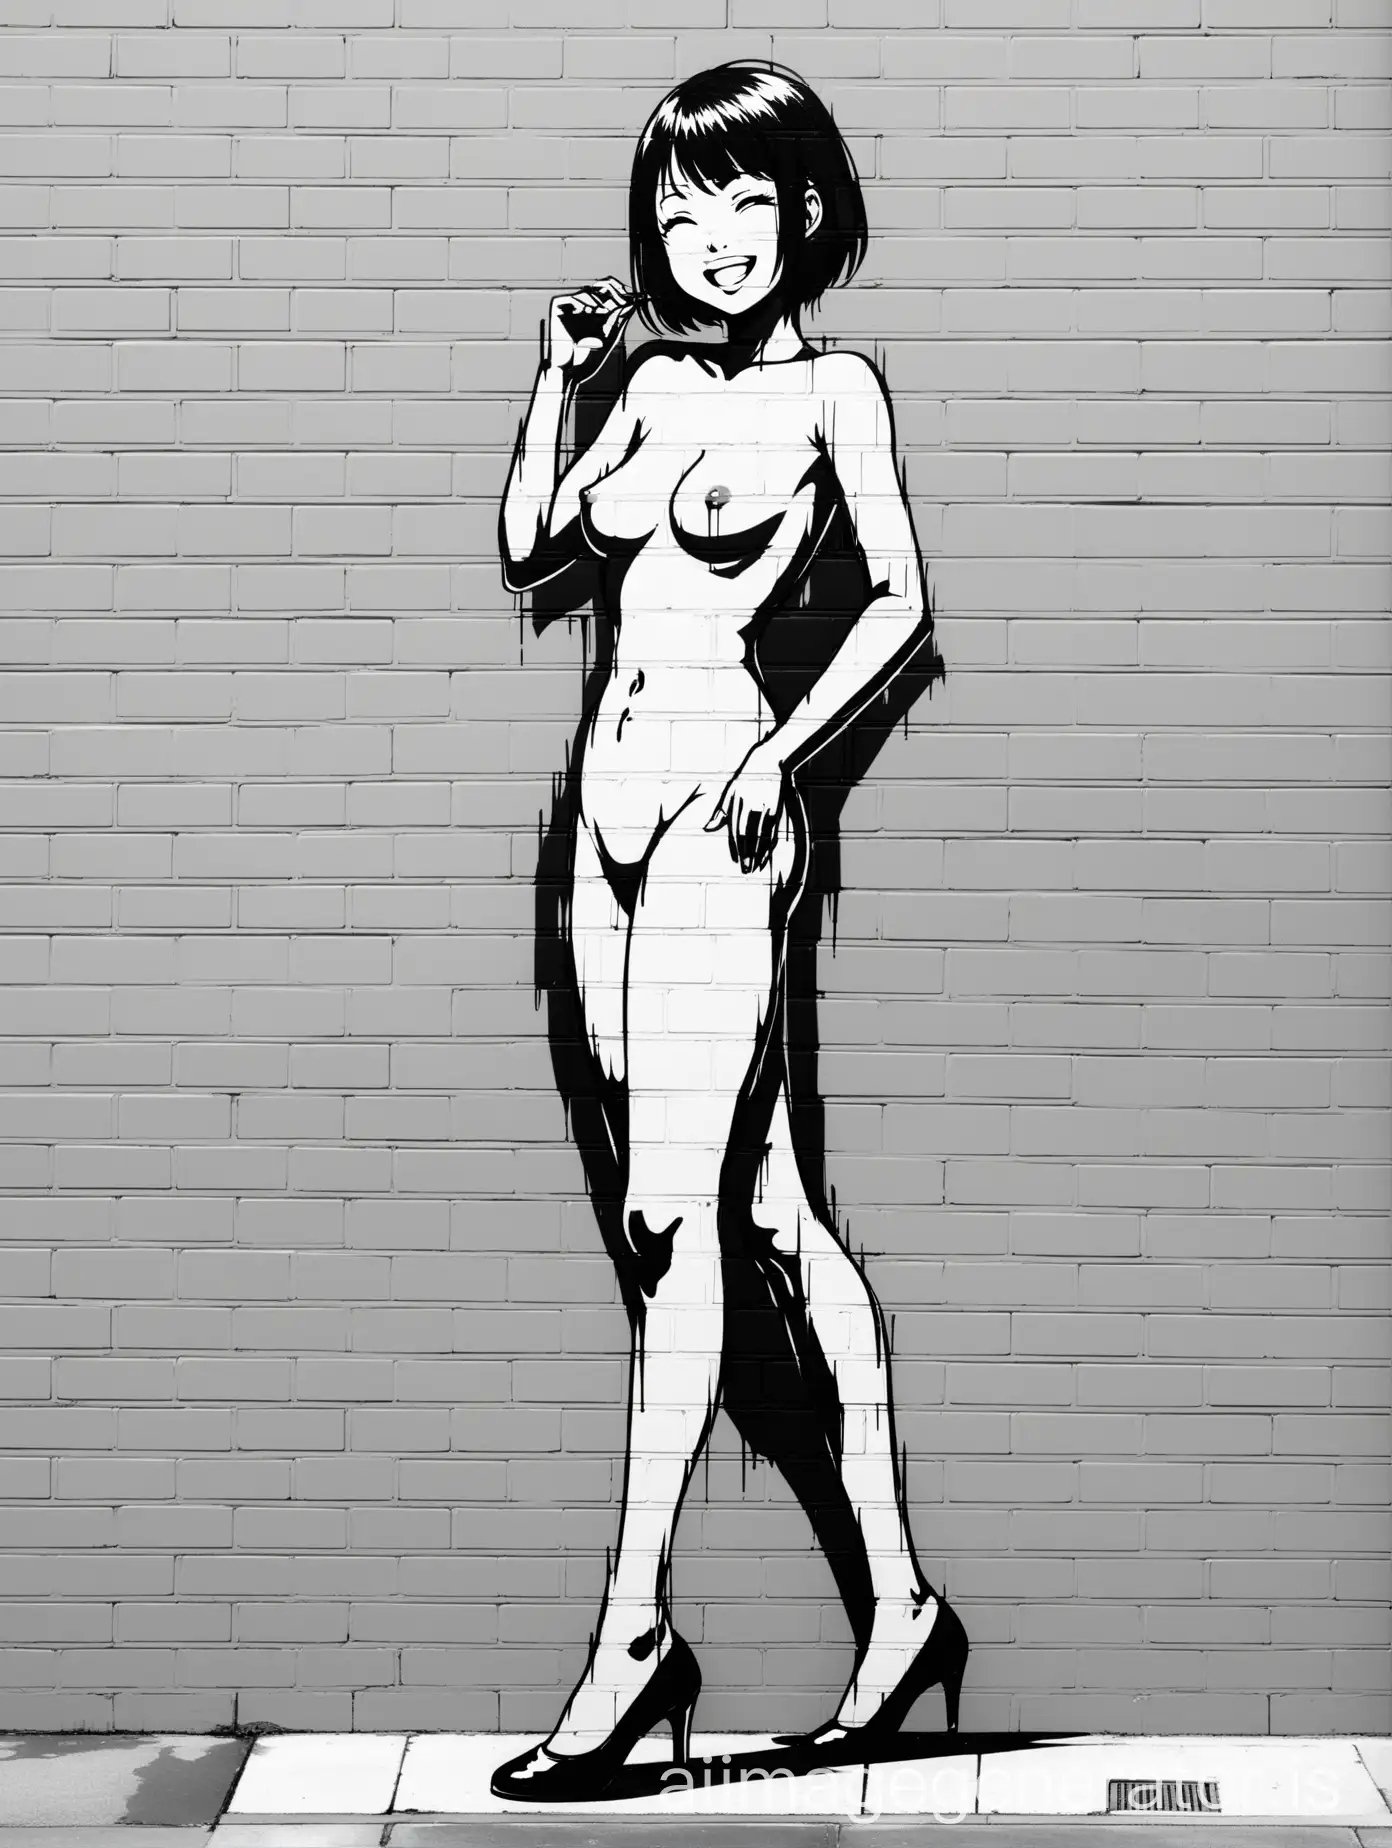 Smiling-Asian-Woman-Graffiti-on-White-Brick-Wall